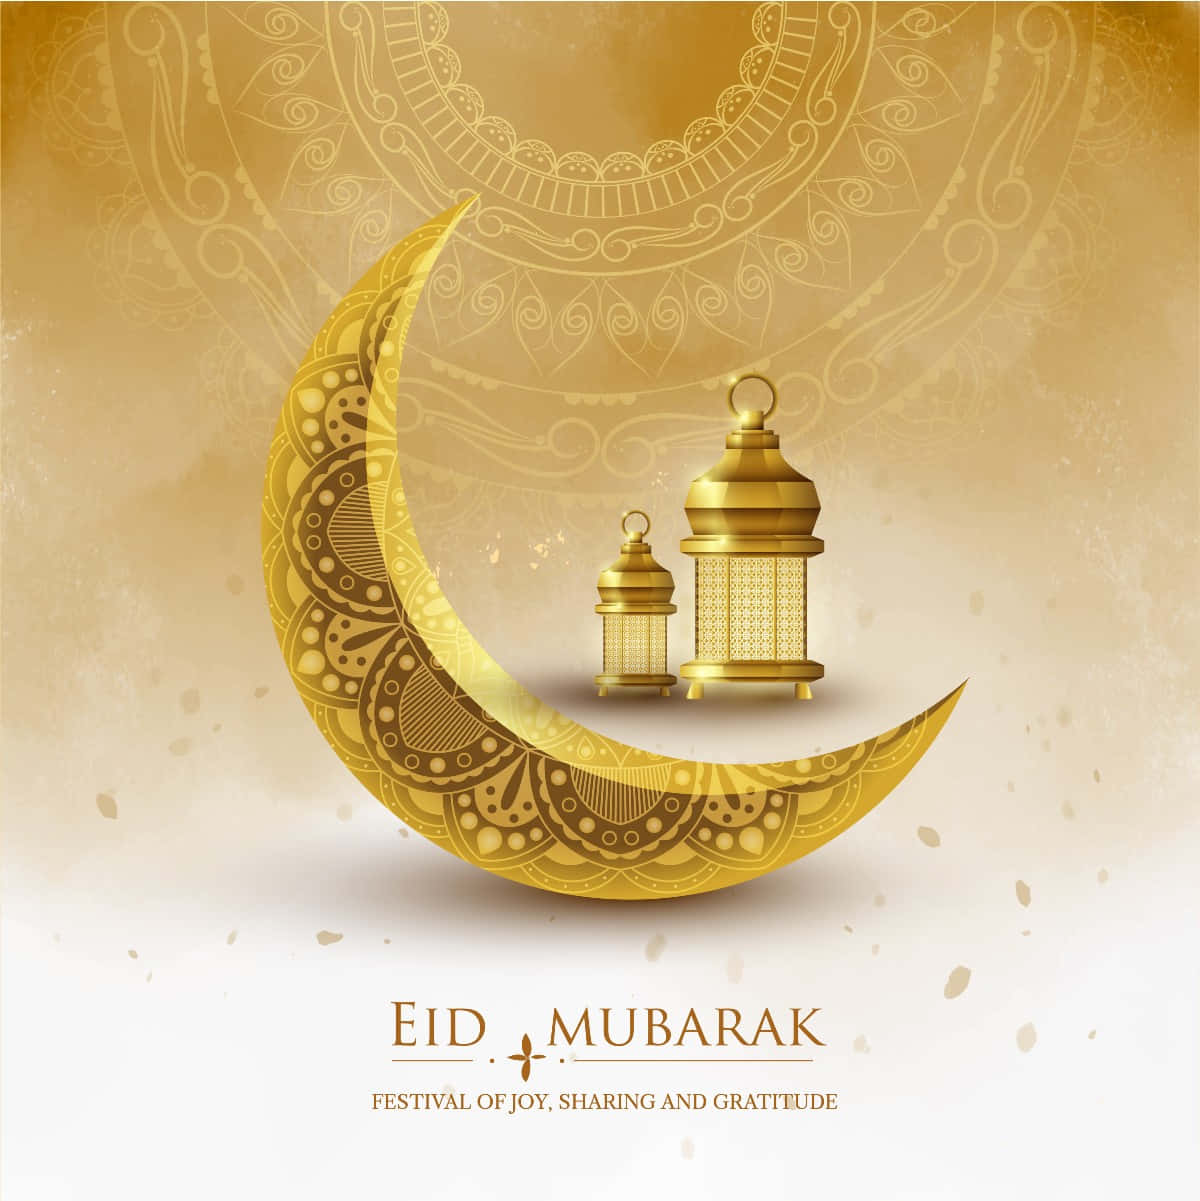 Ichwünsche Dir Ein Gesegnetes Eid Mubarak!